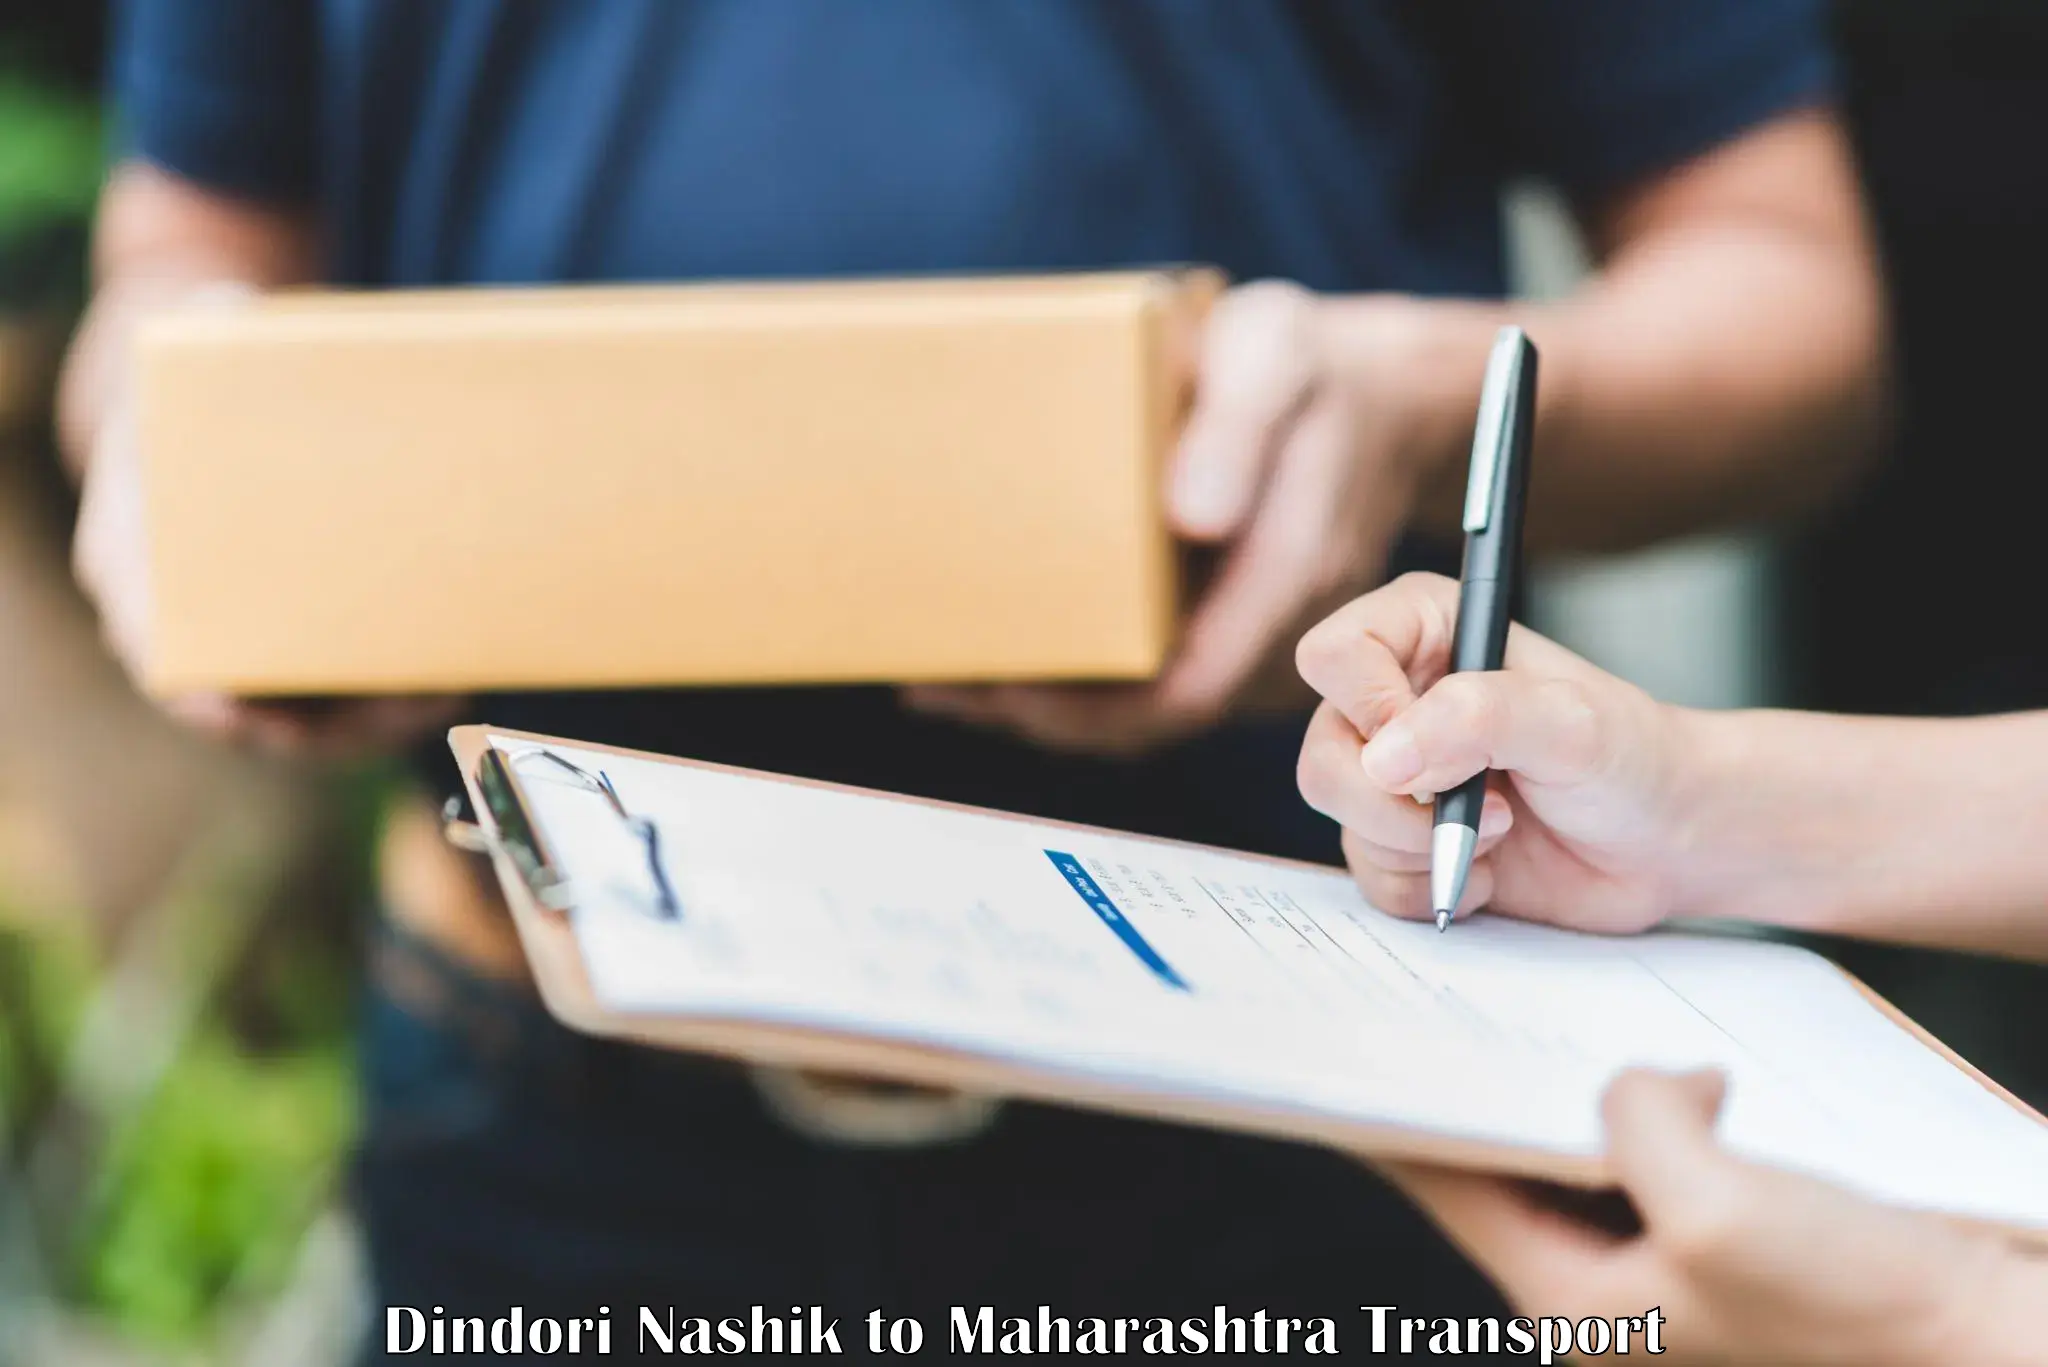 Two wheeler parcel service Dindori Nashik to NIT Nagpur